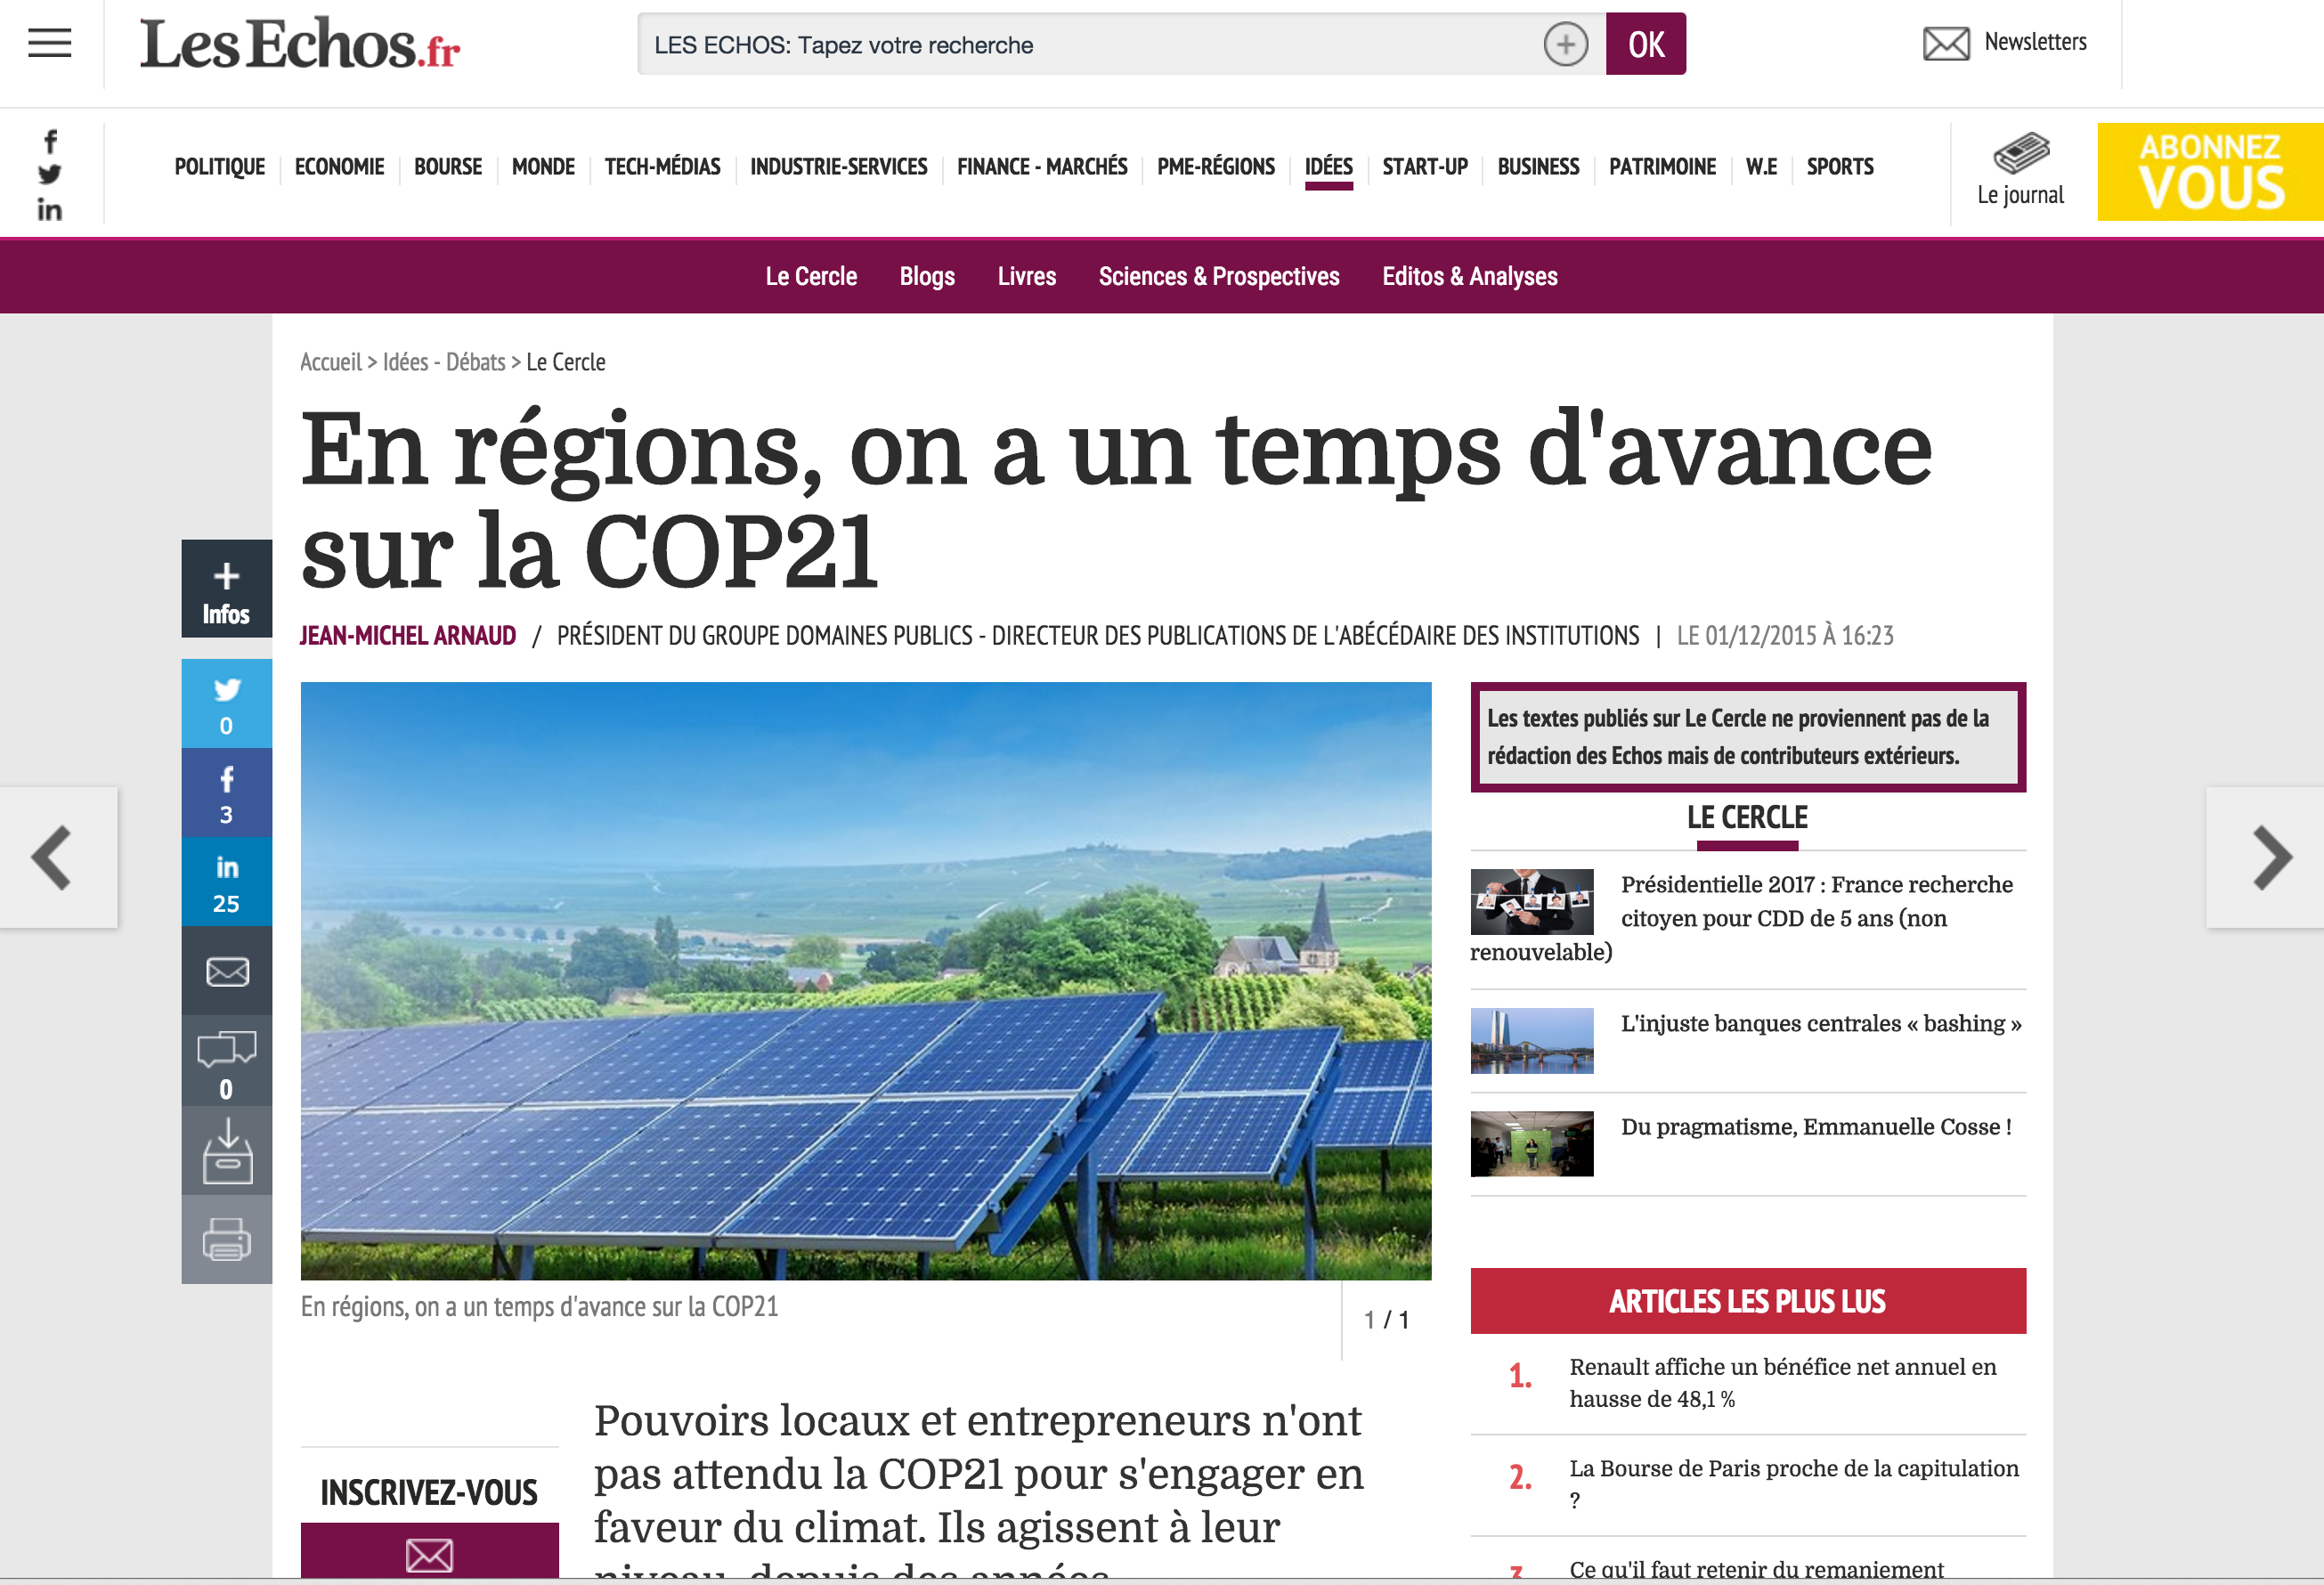 En régions, on a un temps d’avance sur la COP21